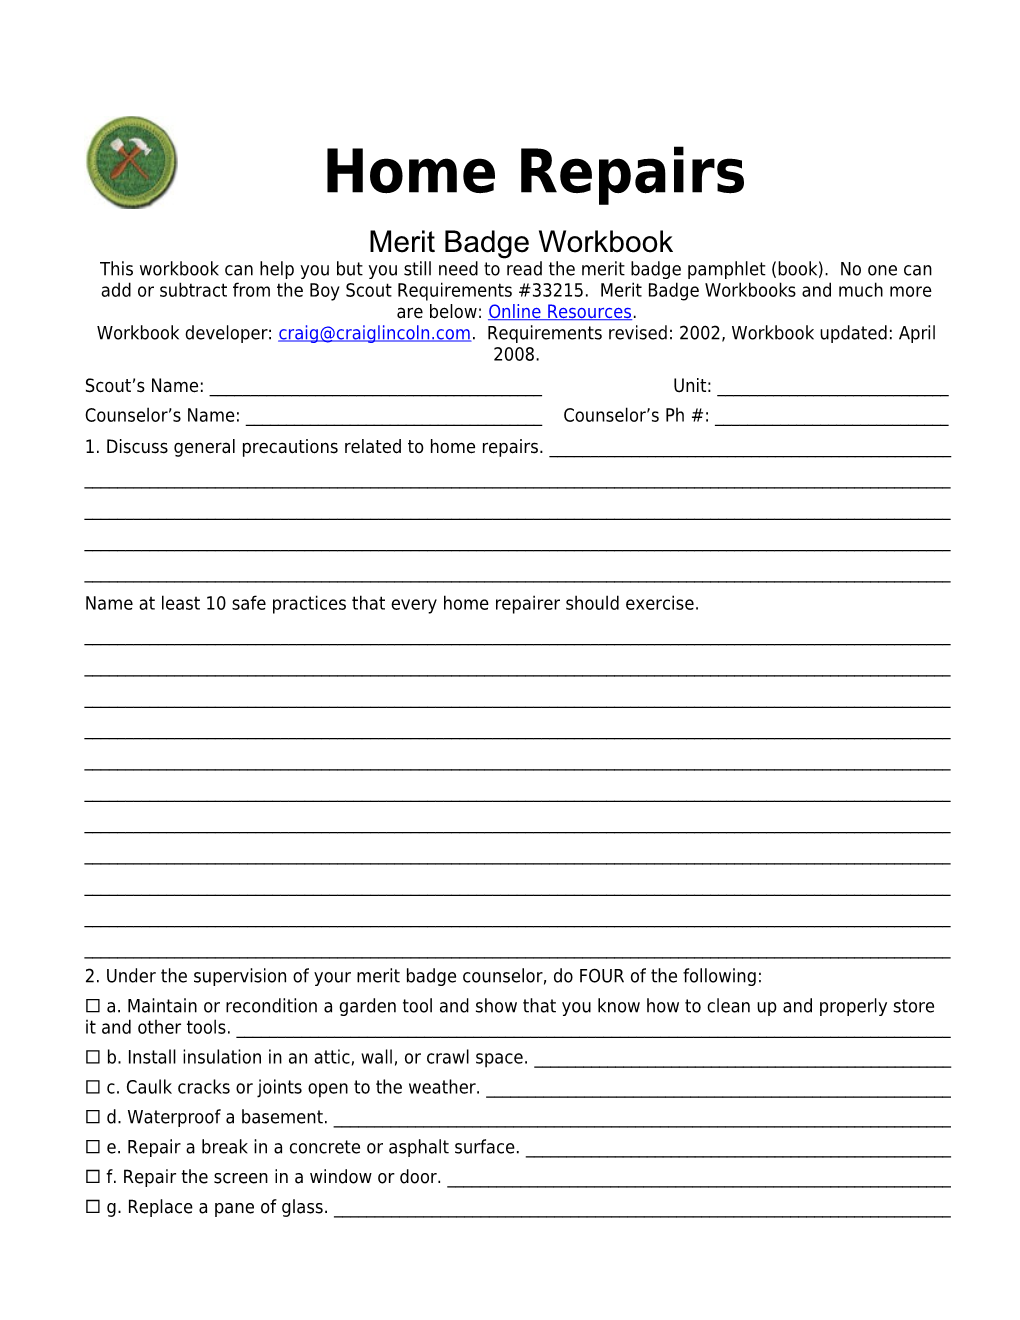 Home Repairs P. 1 Merit Badge Workbookscout's Name: ______